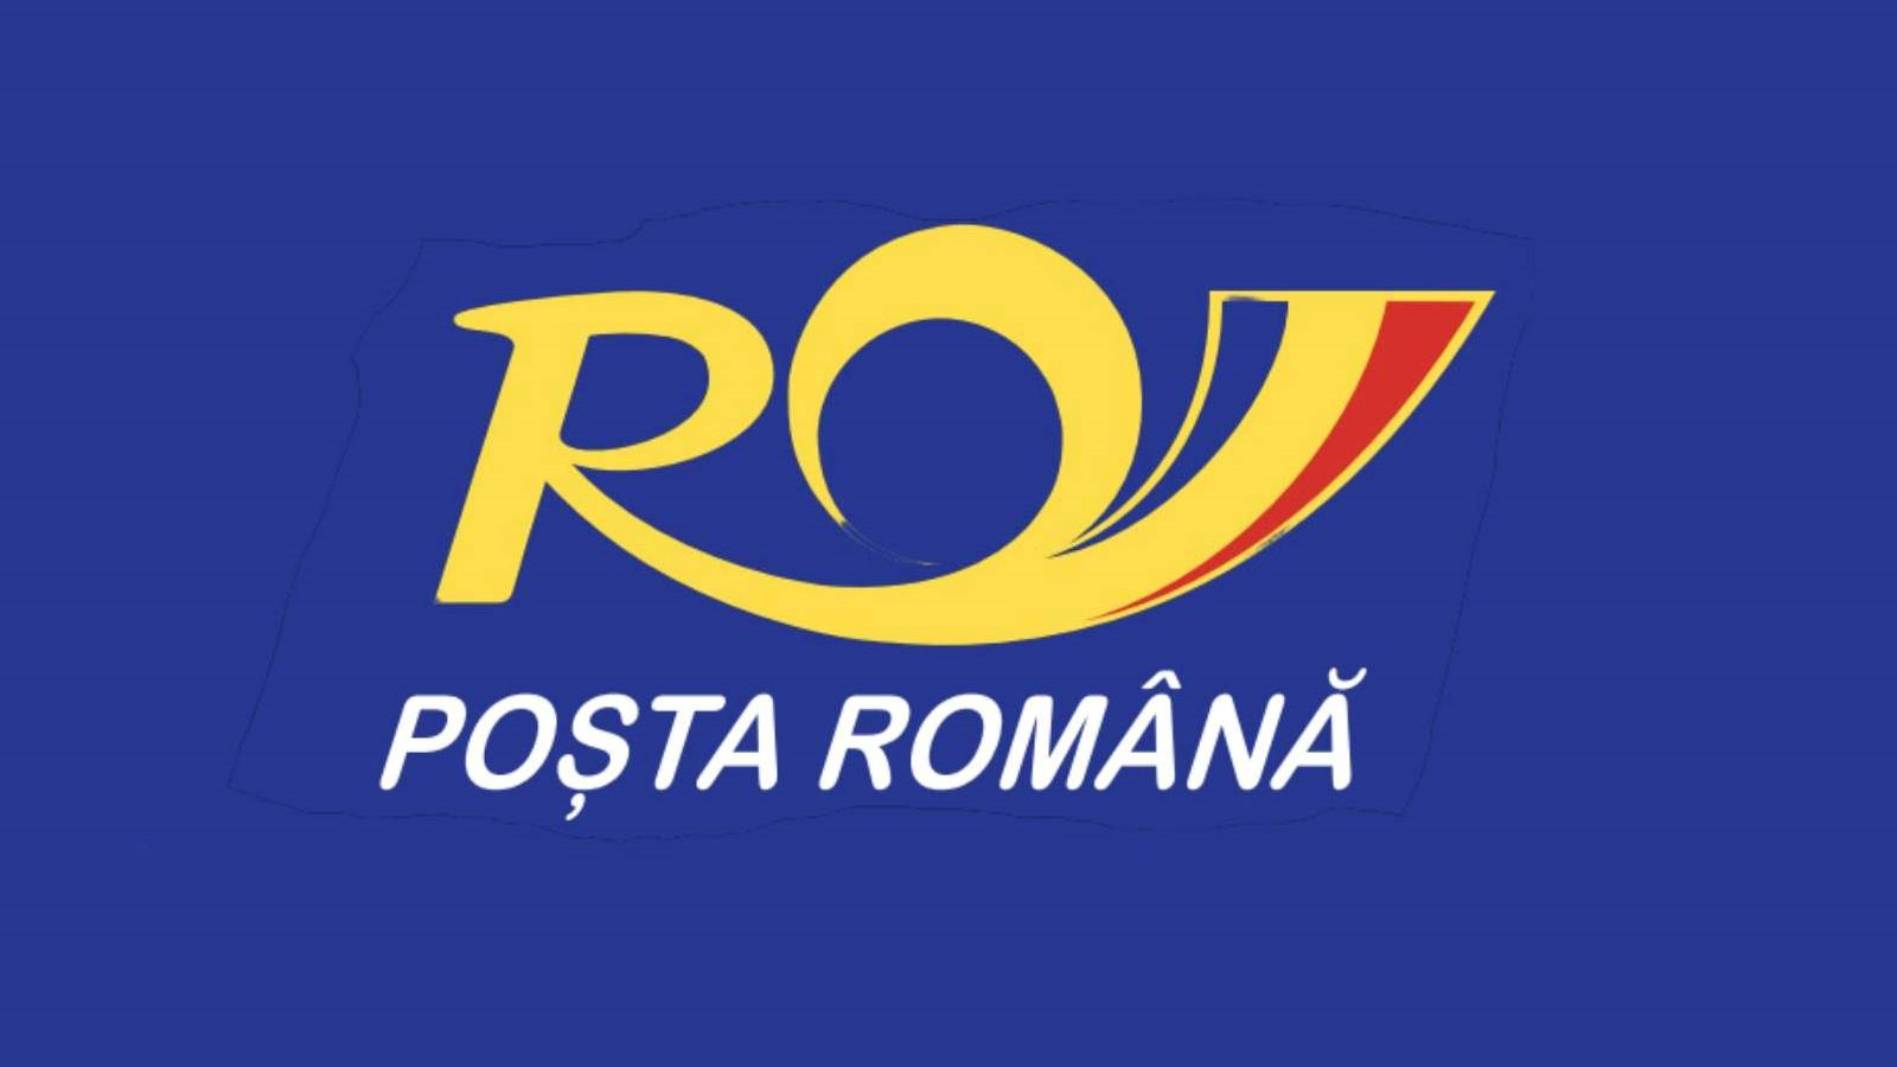 De Roemeense Post kondigt de verlenging van de geldigheid van energiekaarten aan